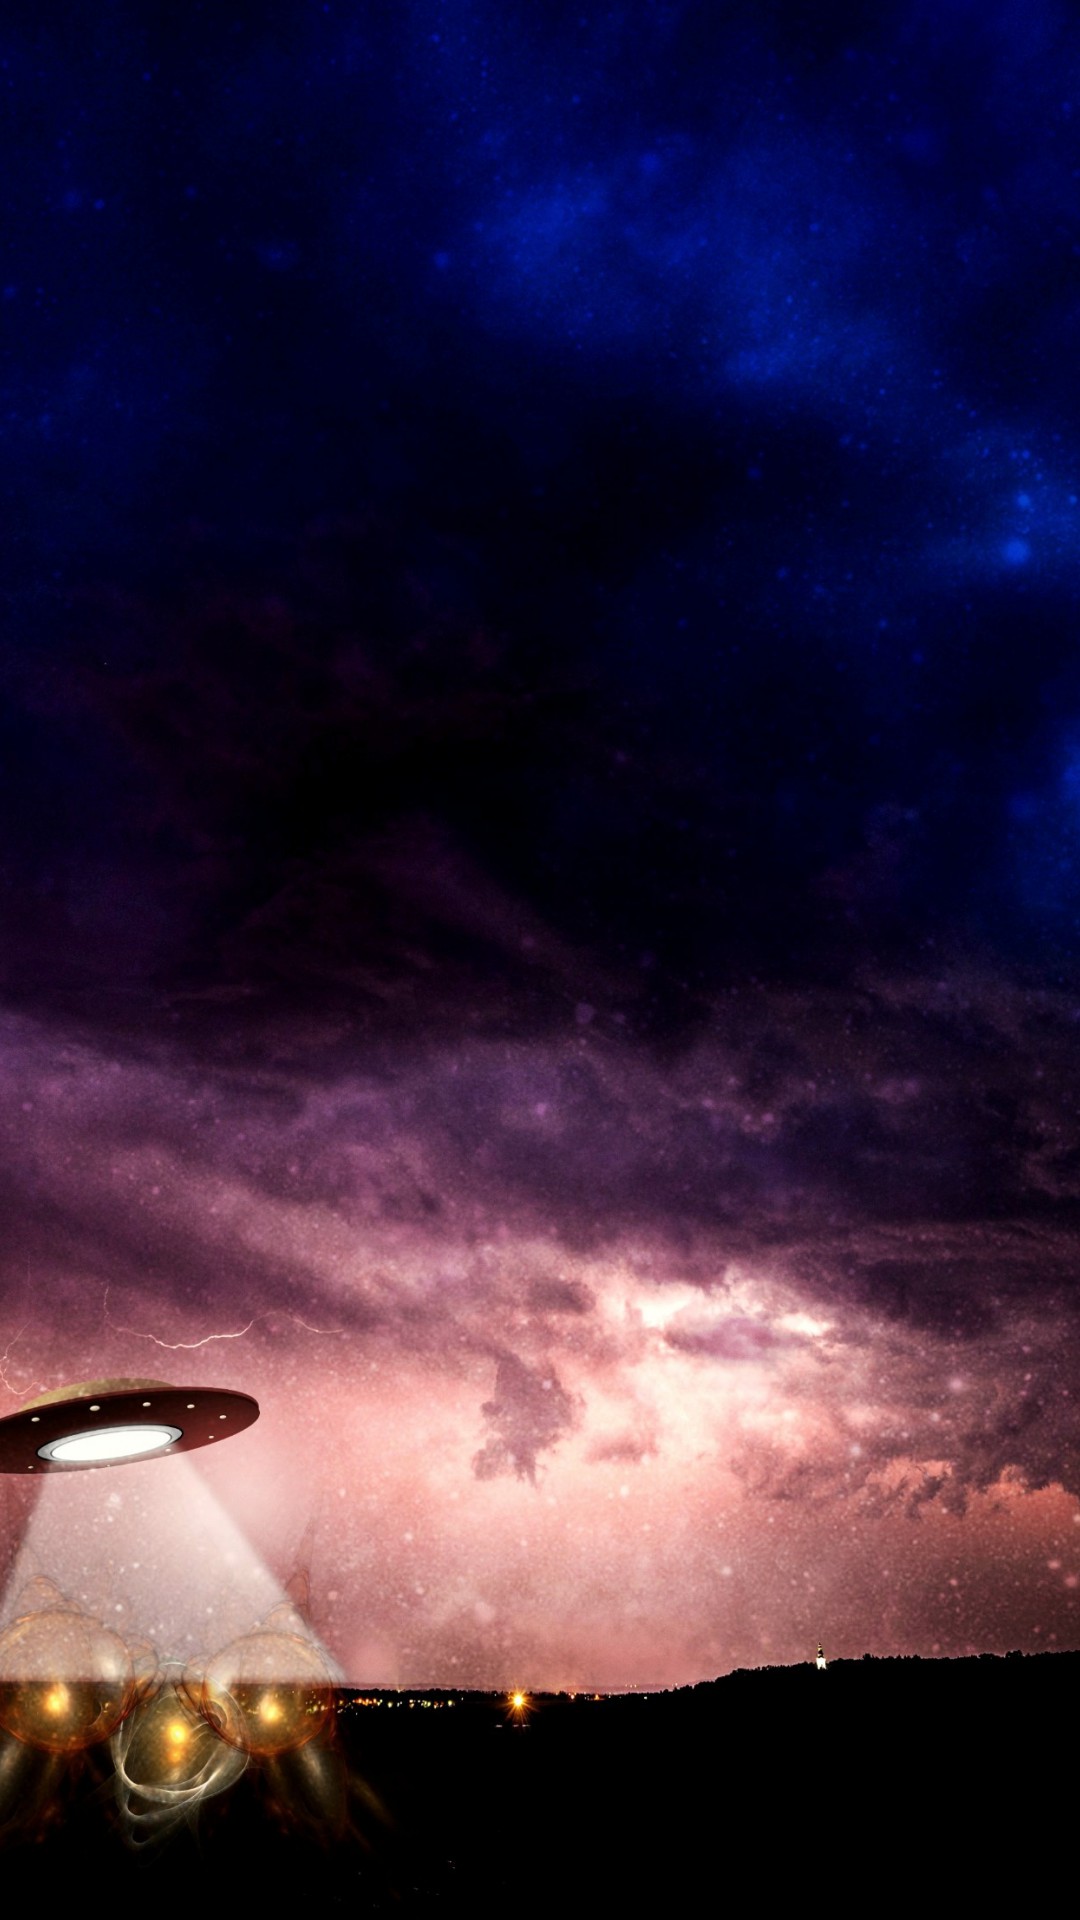 Ufo nad Ziemią w gwieździstą noc